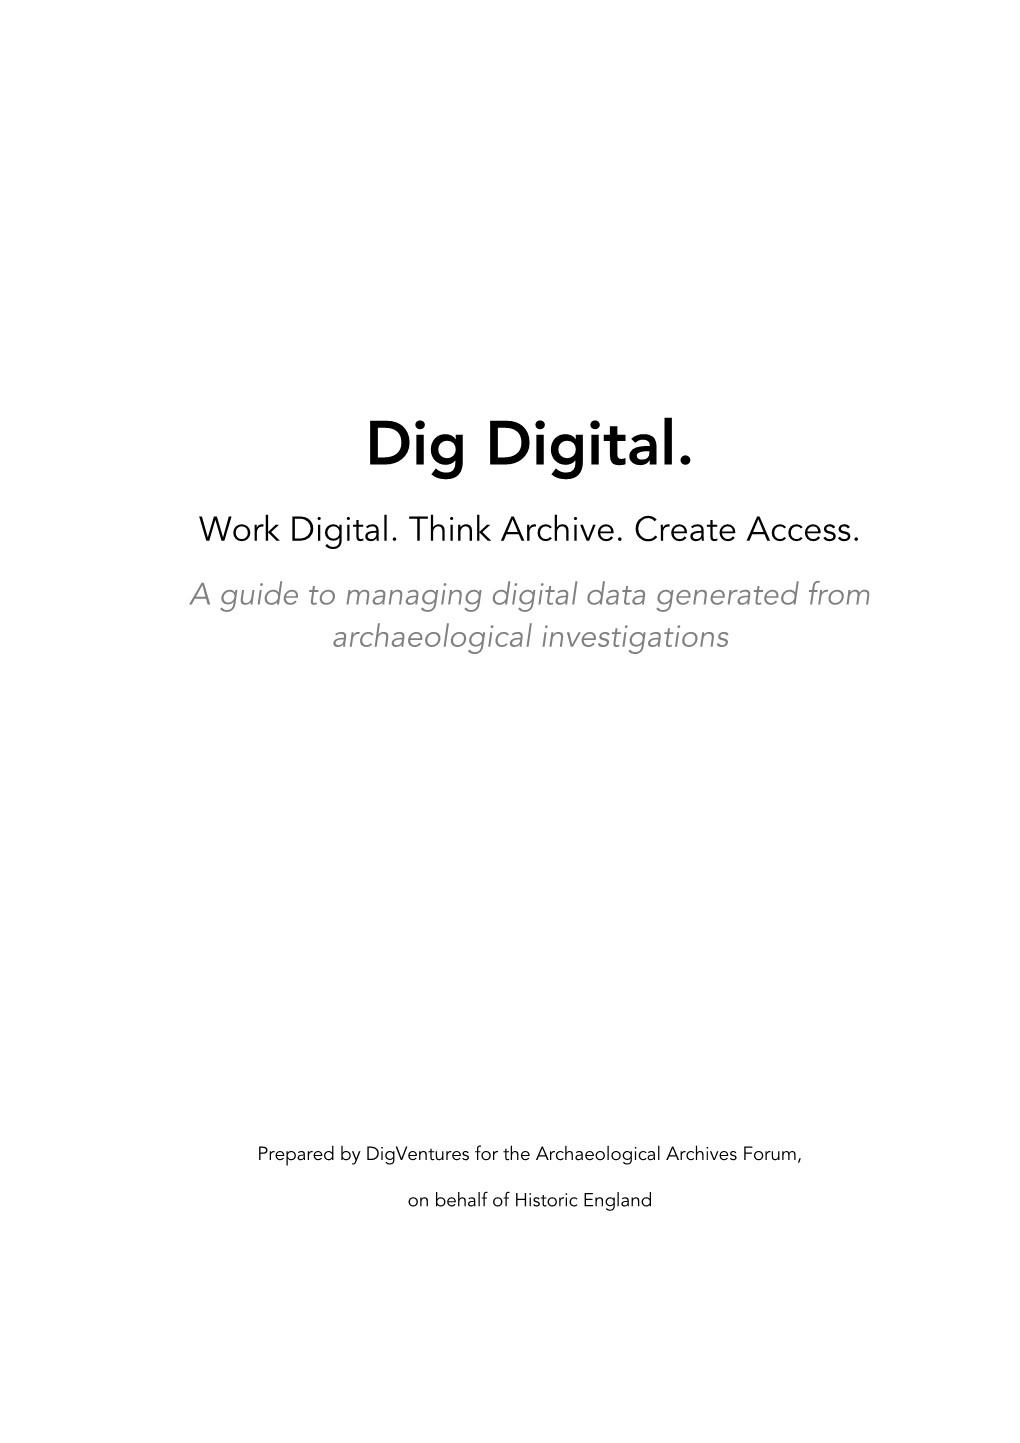 Dig Digital. Work Digital